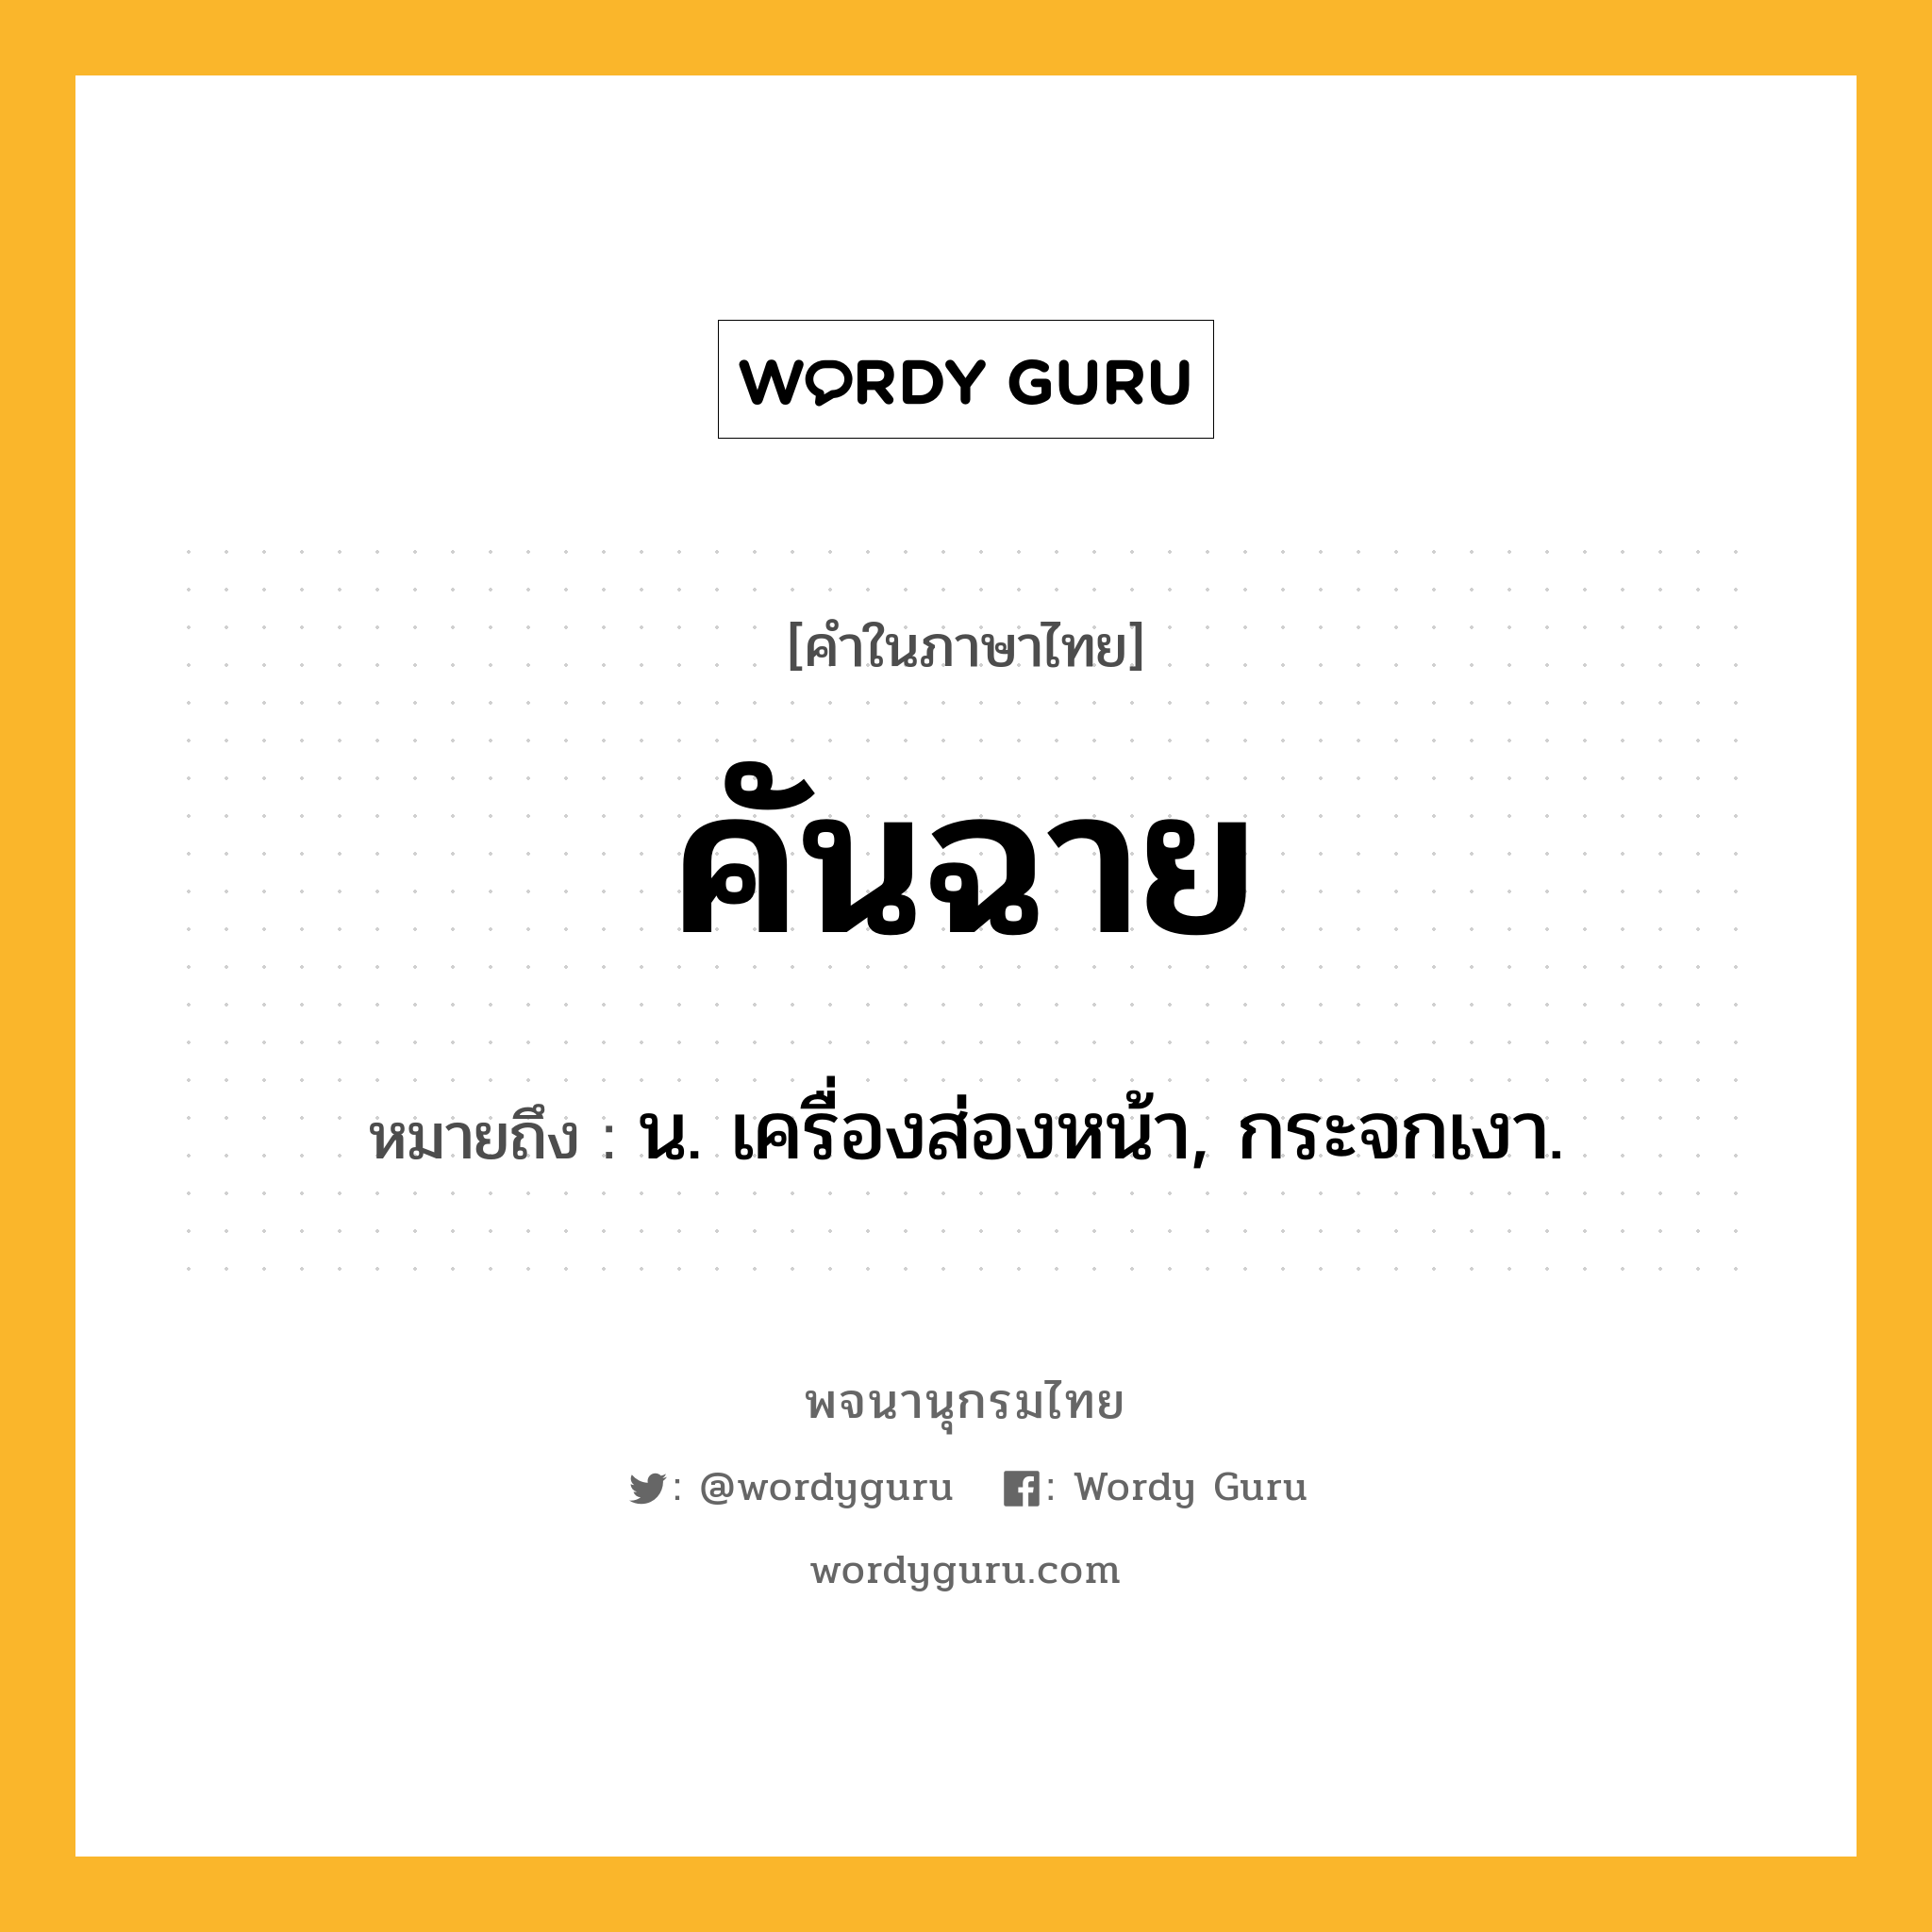 คันฉาย ความหมาย หมายถึงอะไร?, คำในภาษาไทย คันฉาย หมายถึง น. เครื่องส่องหน้า, กระจกเงา.